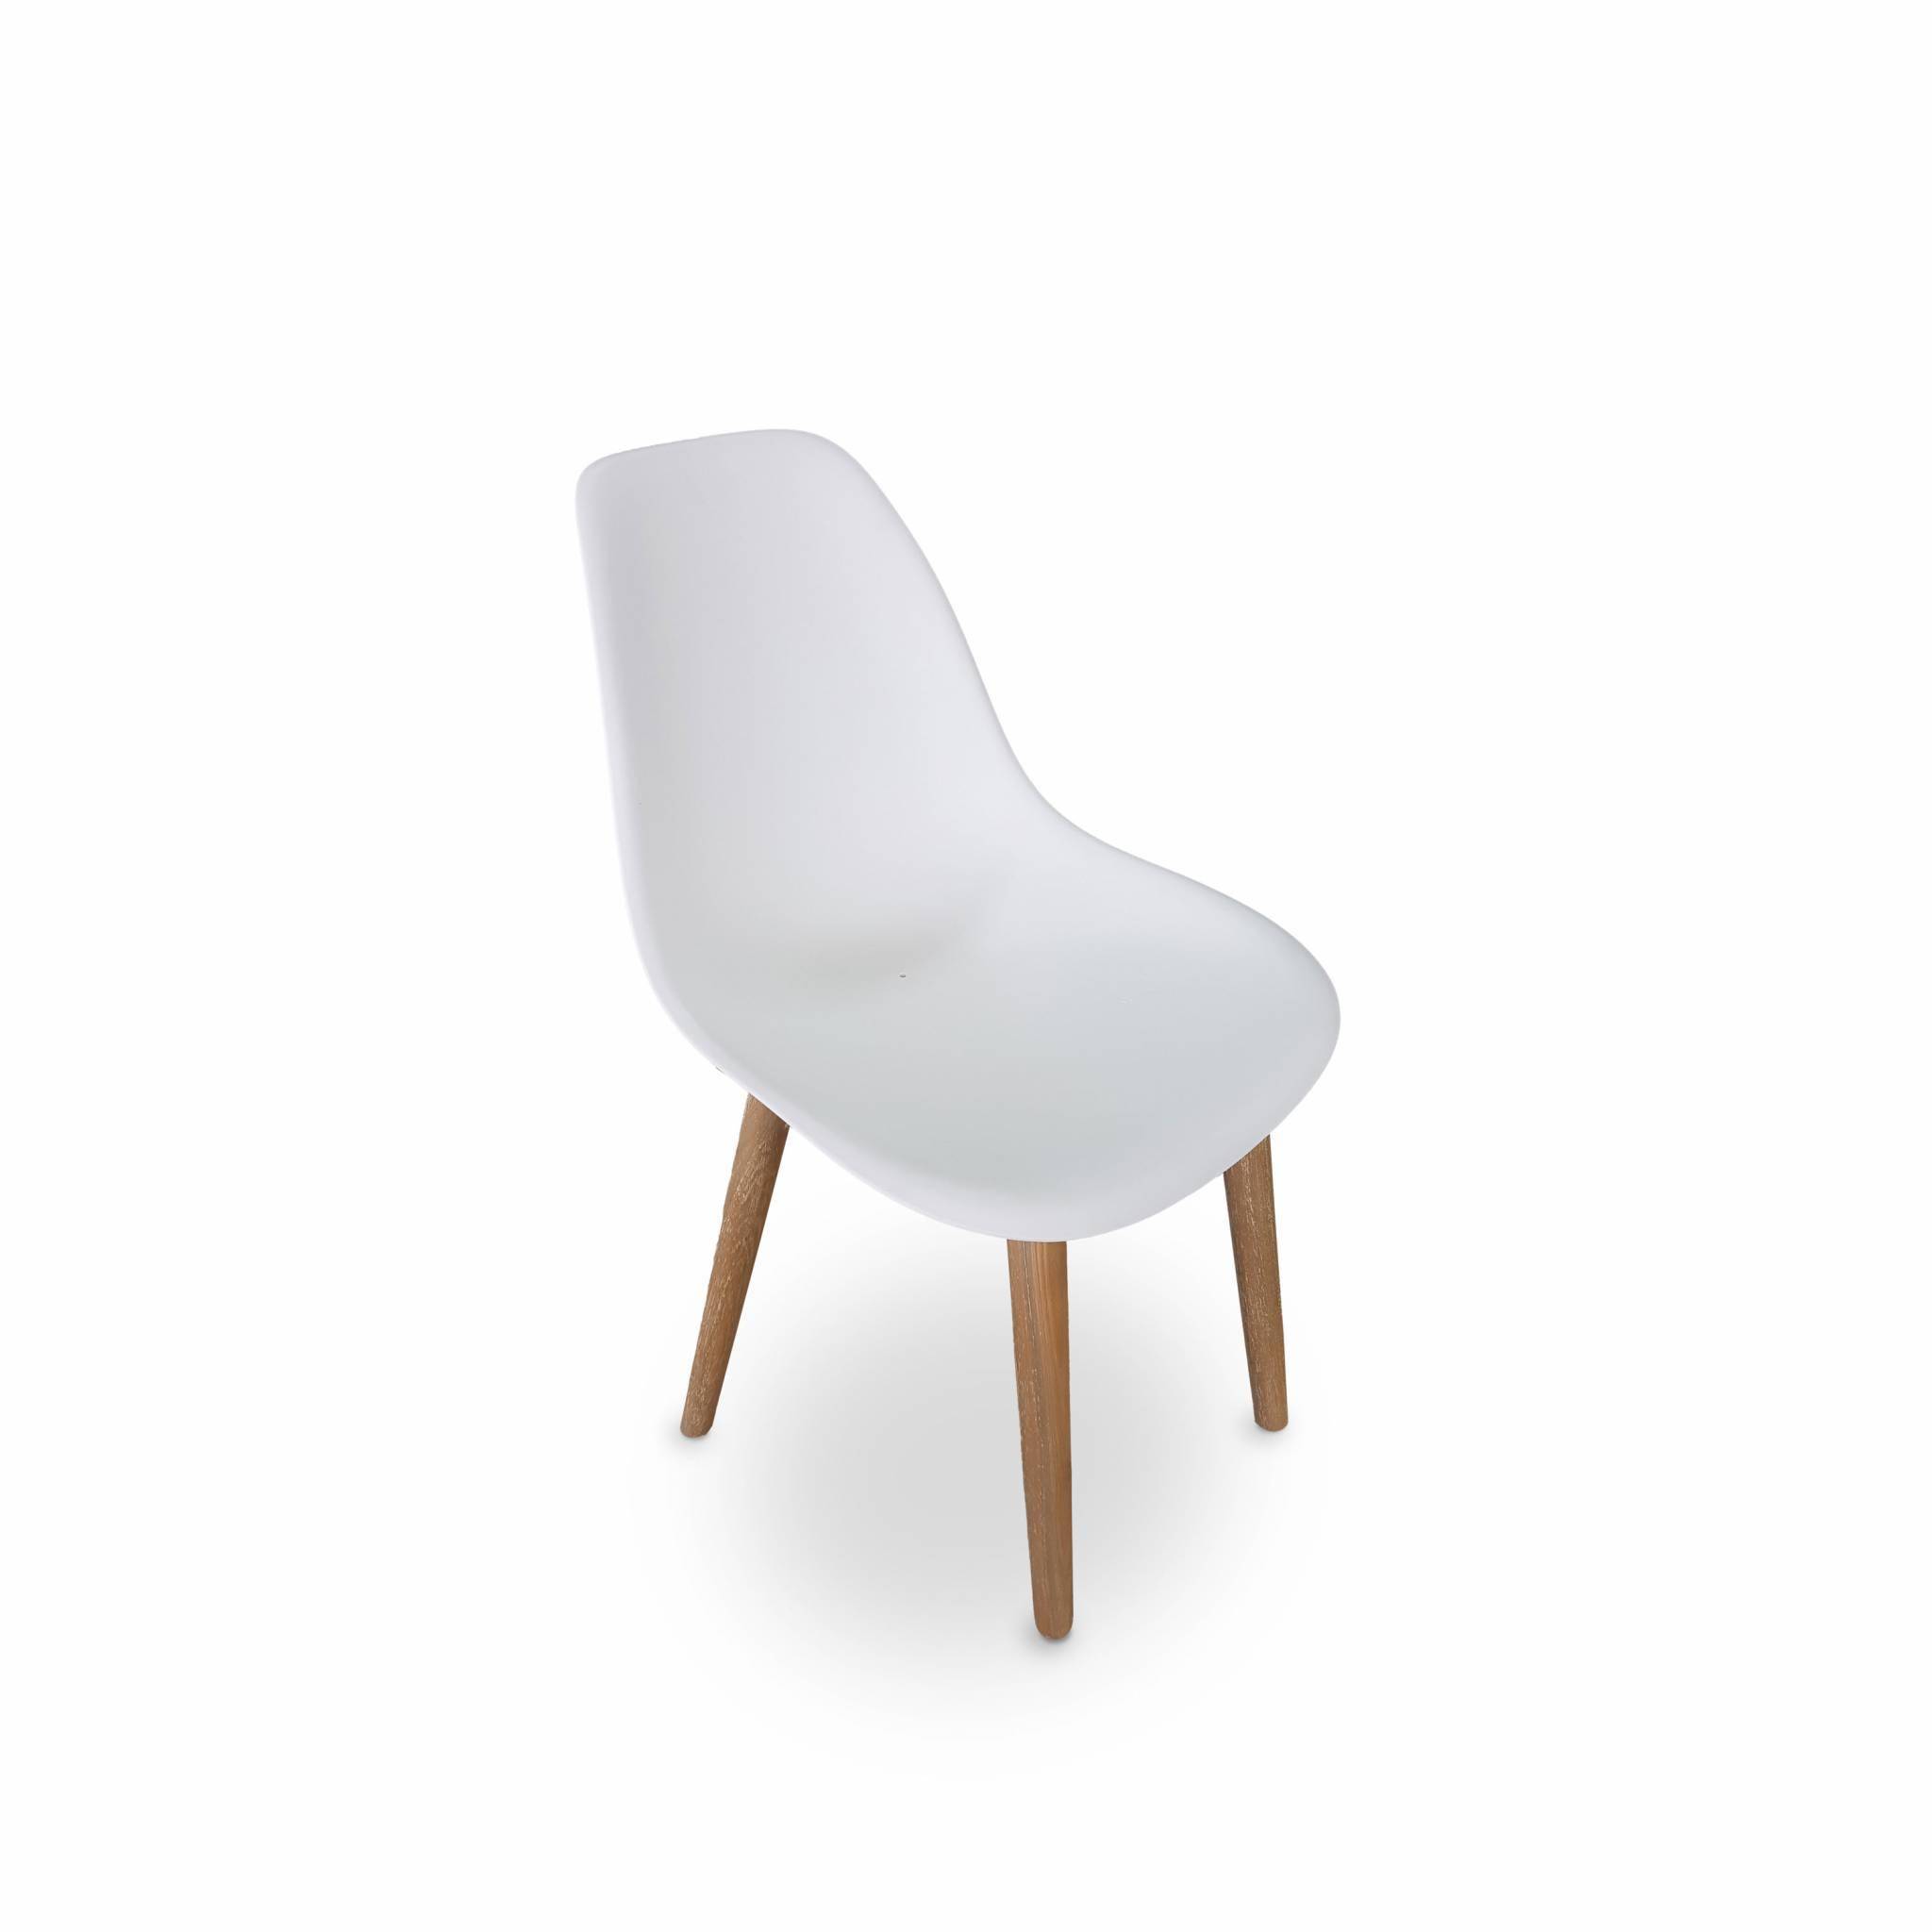 4er Set skandinavische Stühle Penida, aus Akazienholz und weißem Kunstharz gespritzt, innen/außen Photo2